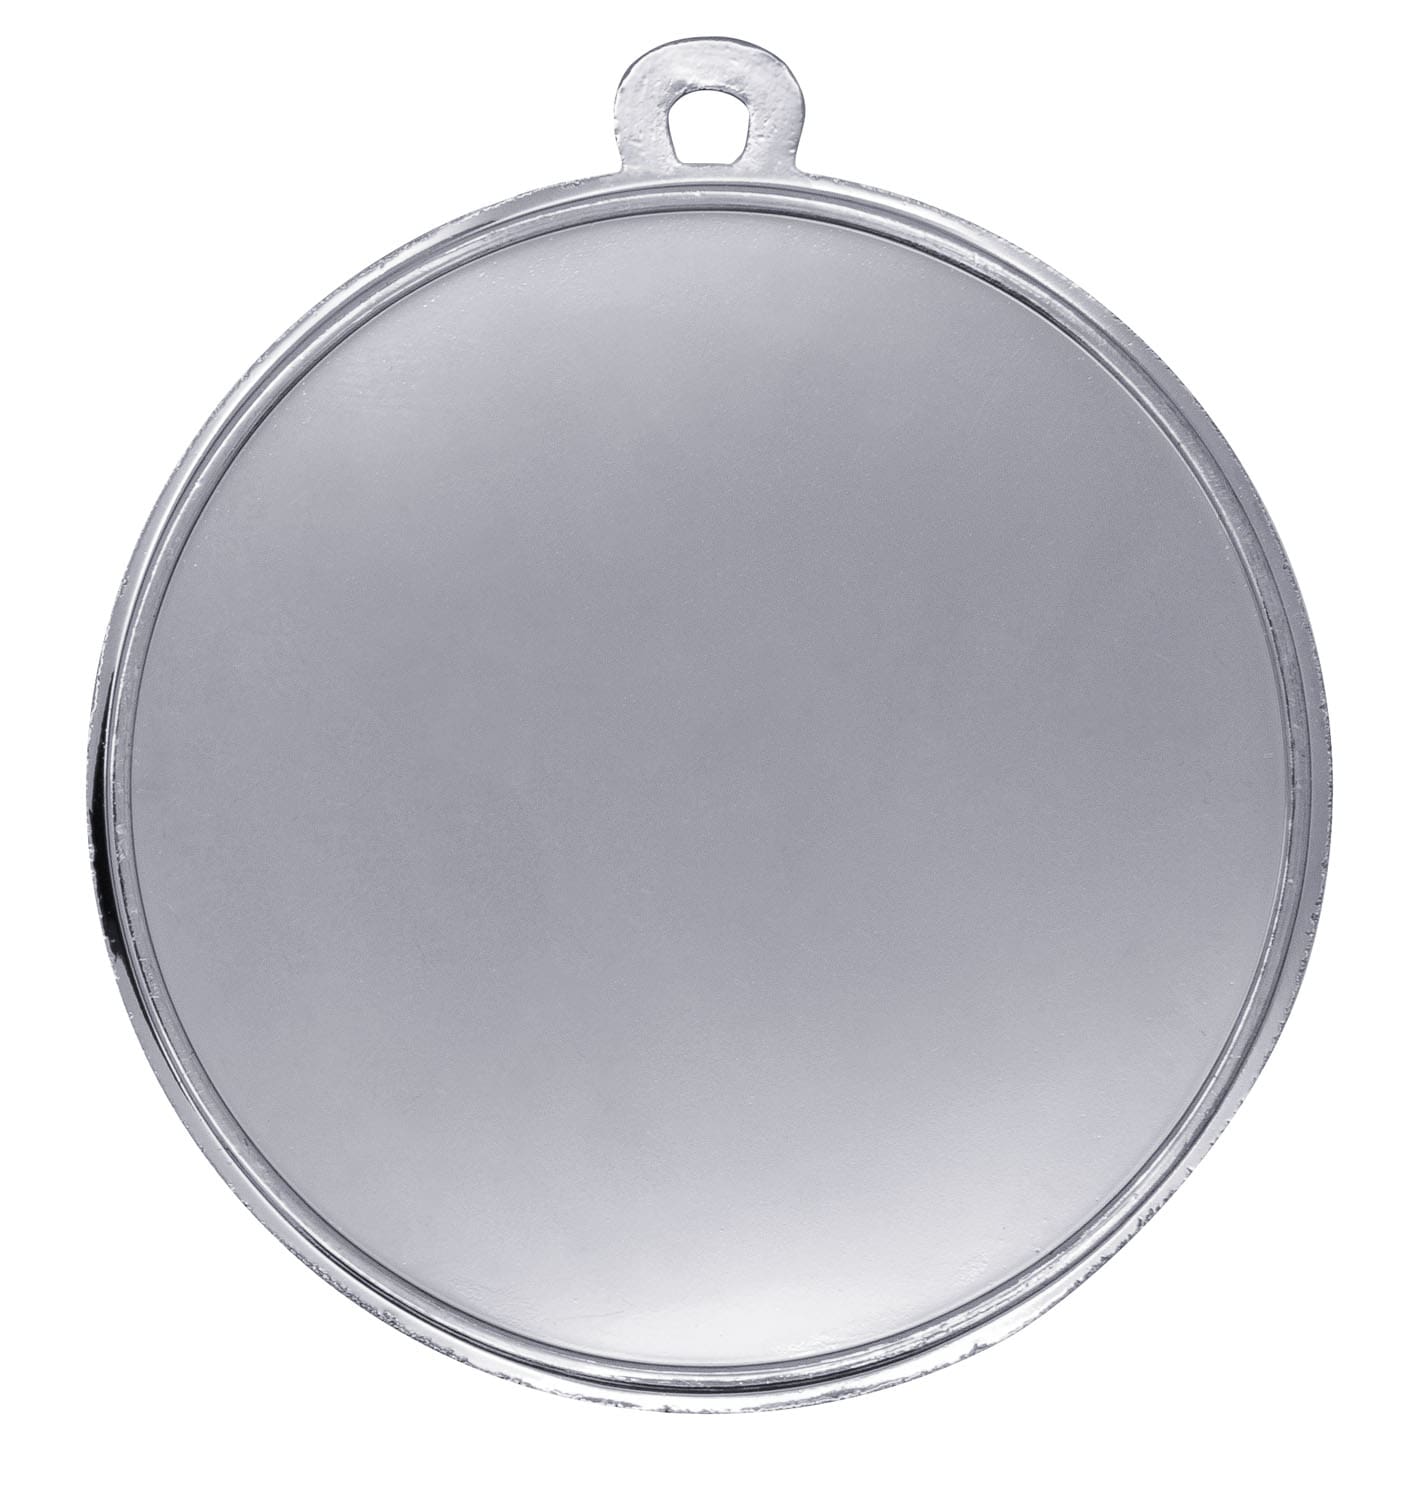 Medaille "Anemonen" Ø 40 mm inkl. Wunschemblem und Kordel